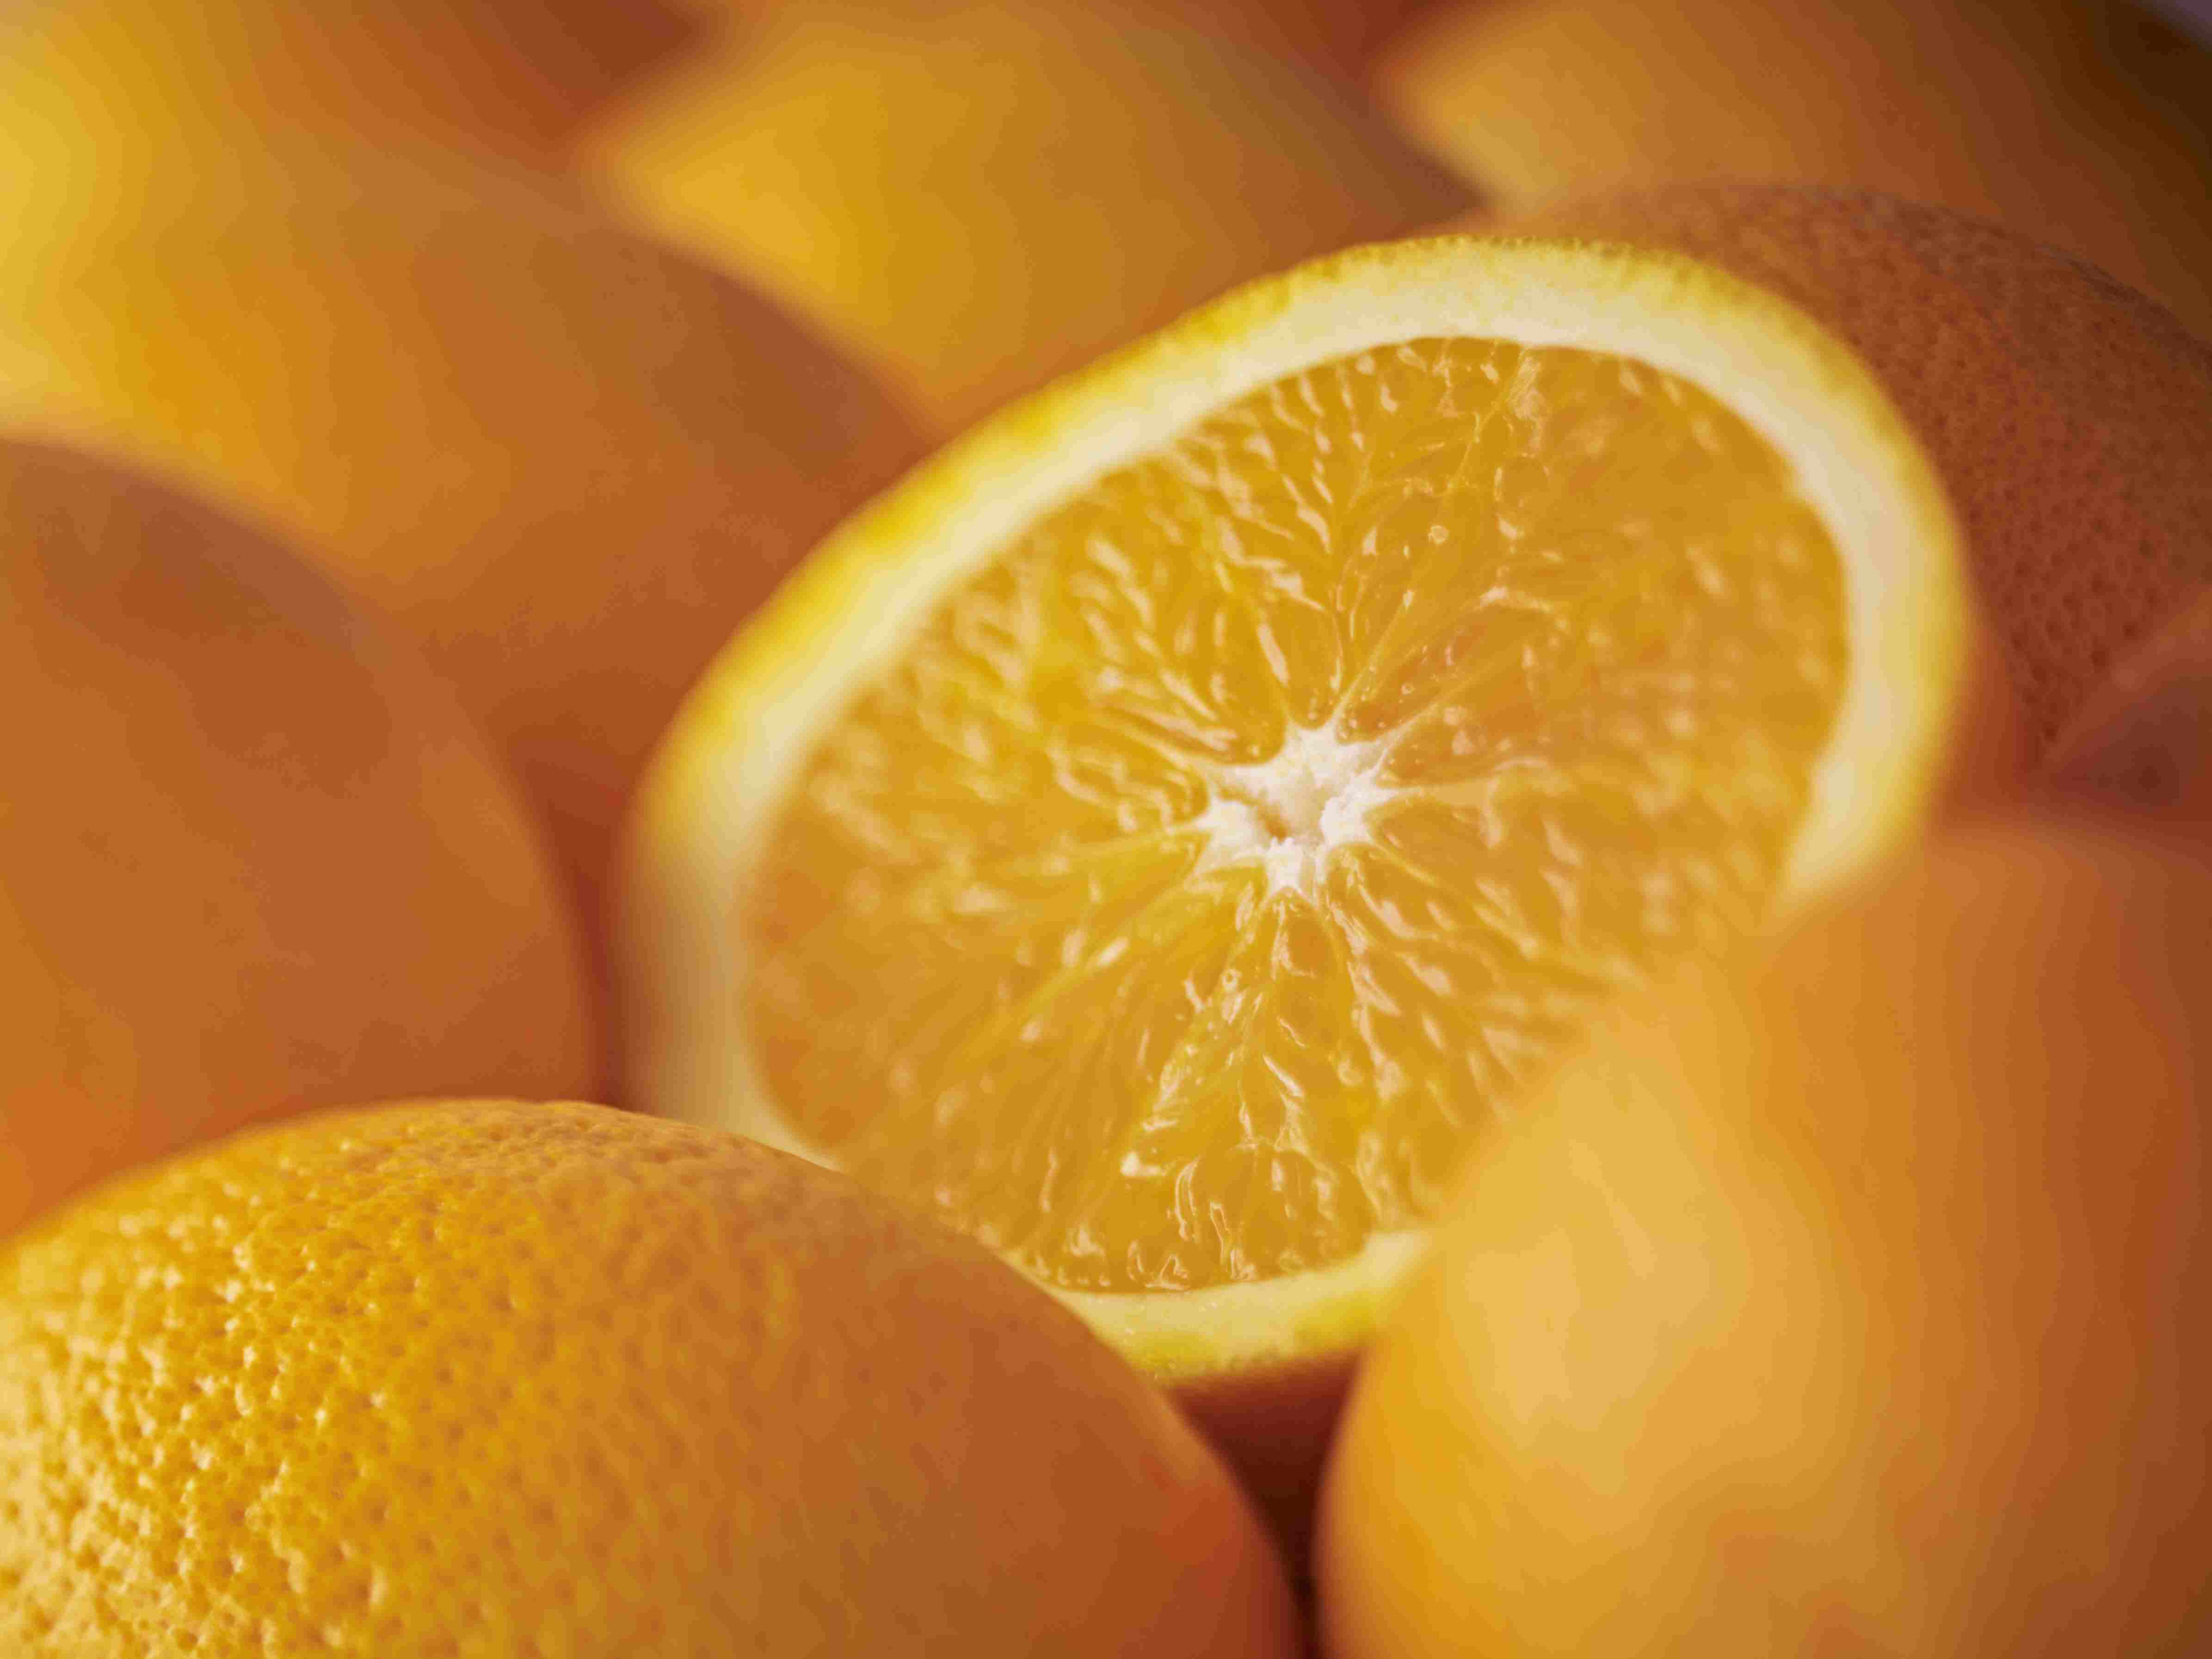 Extreme close up of sliced Salustiana orange